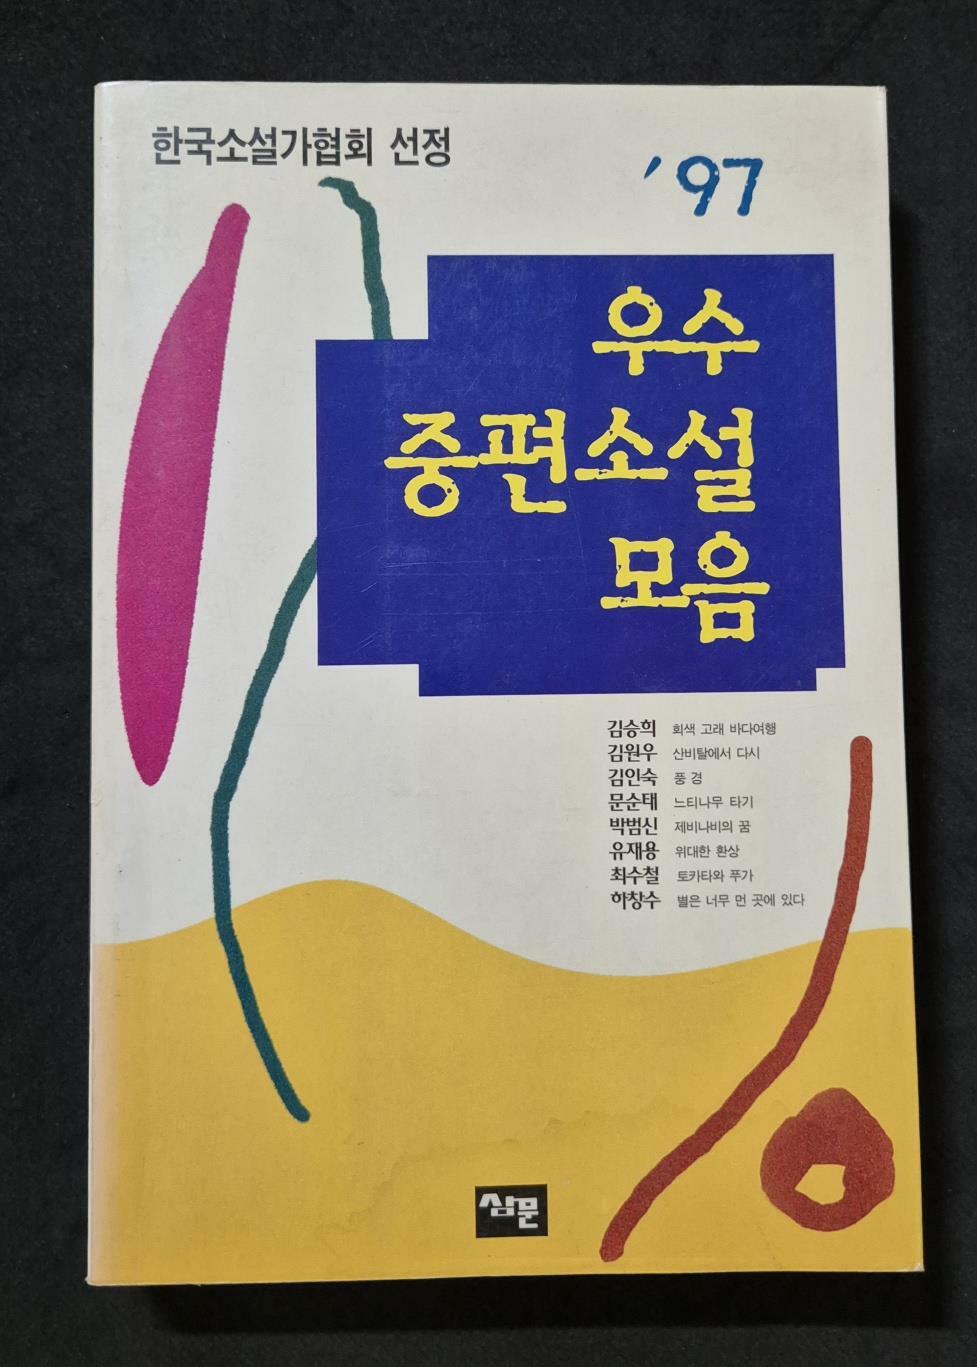 [중고] 한국소설가협회 선정 / 97 우수중편소설 모음 